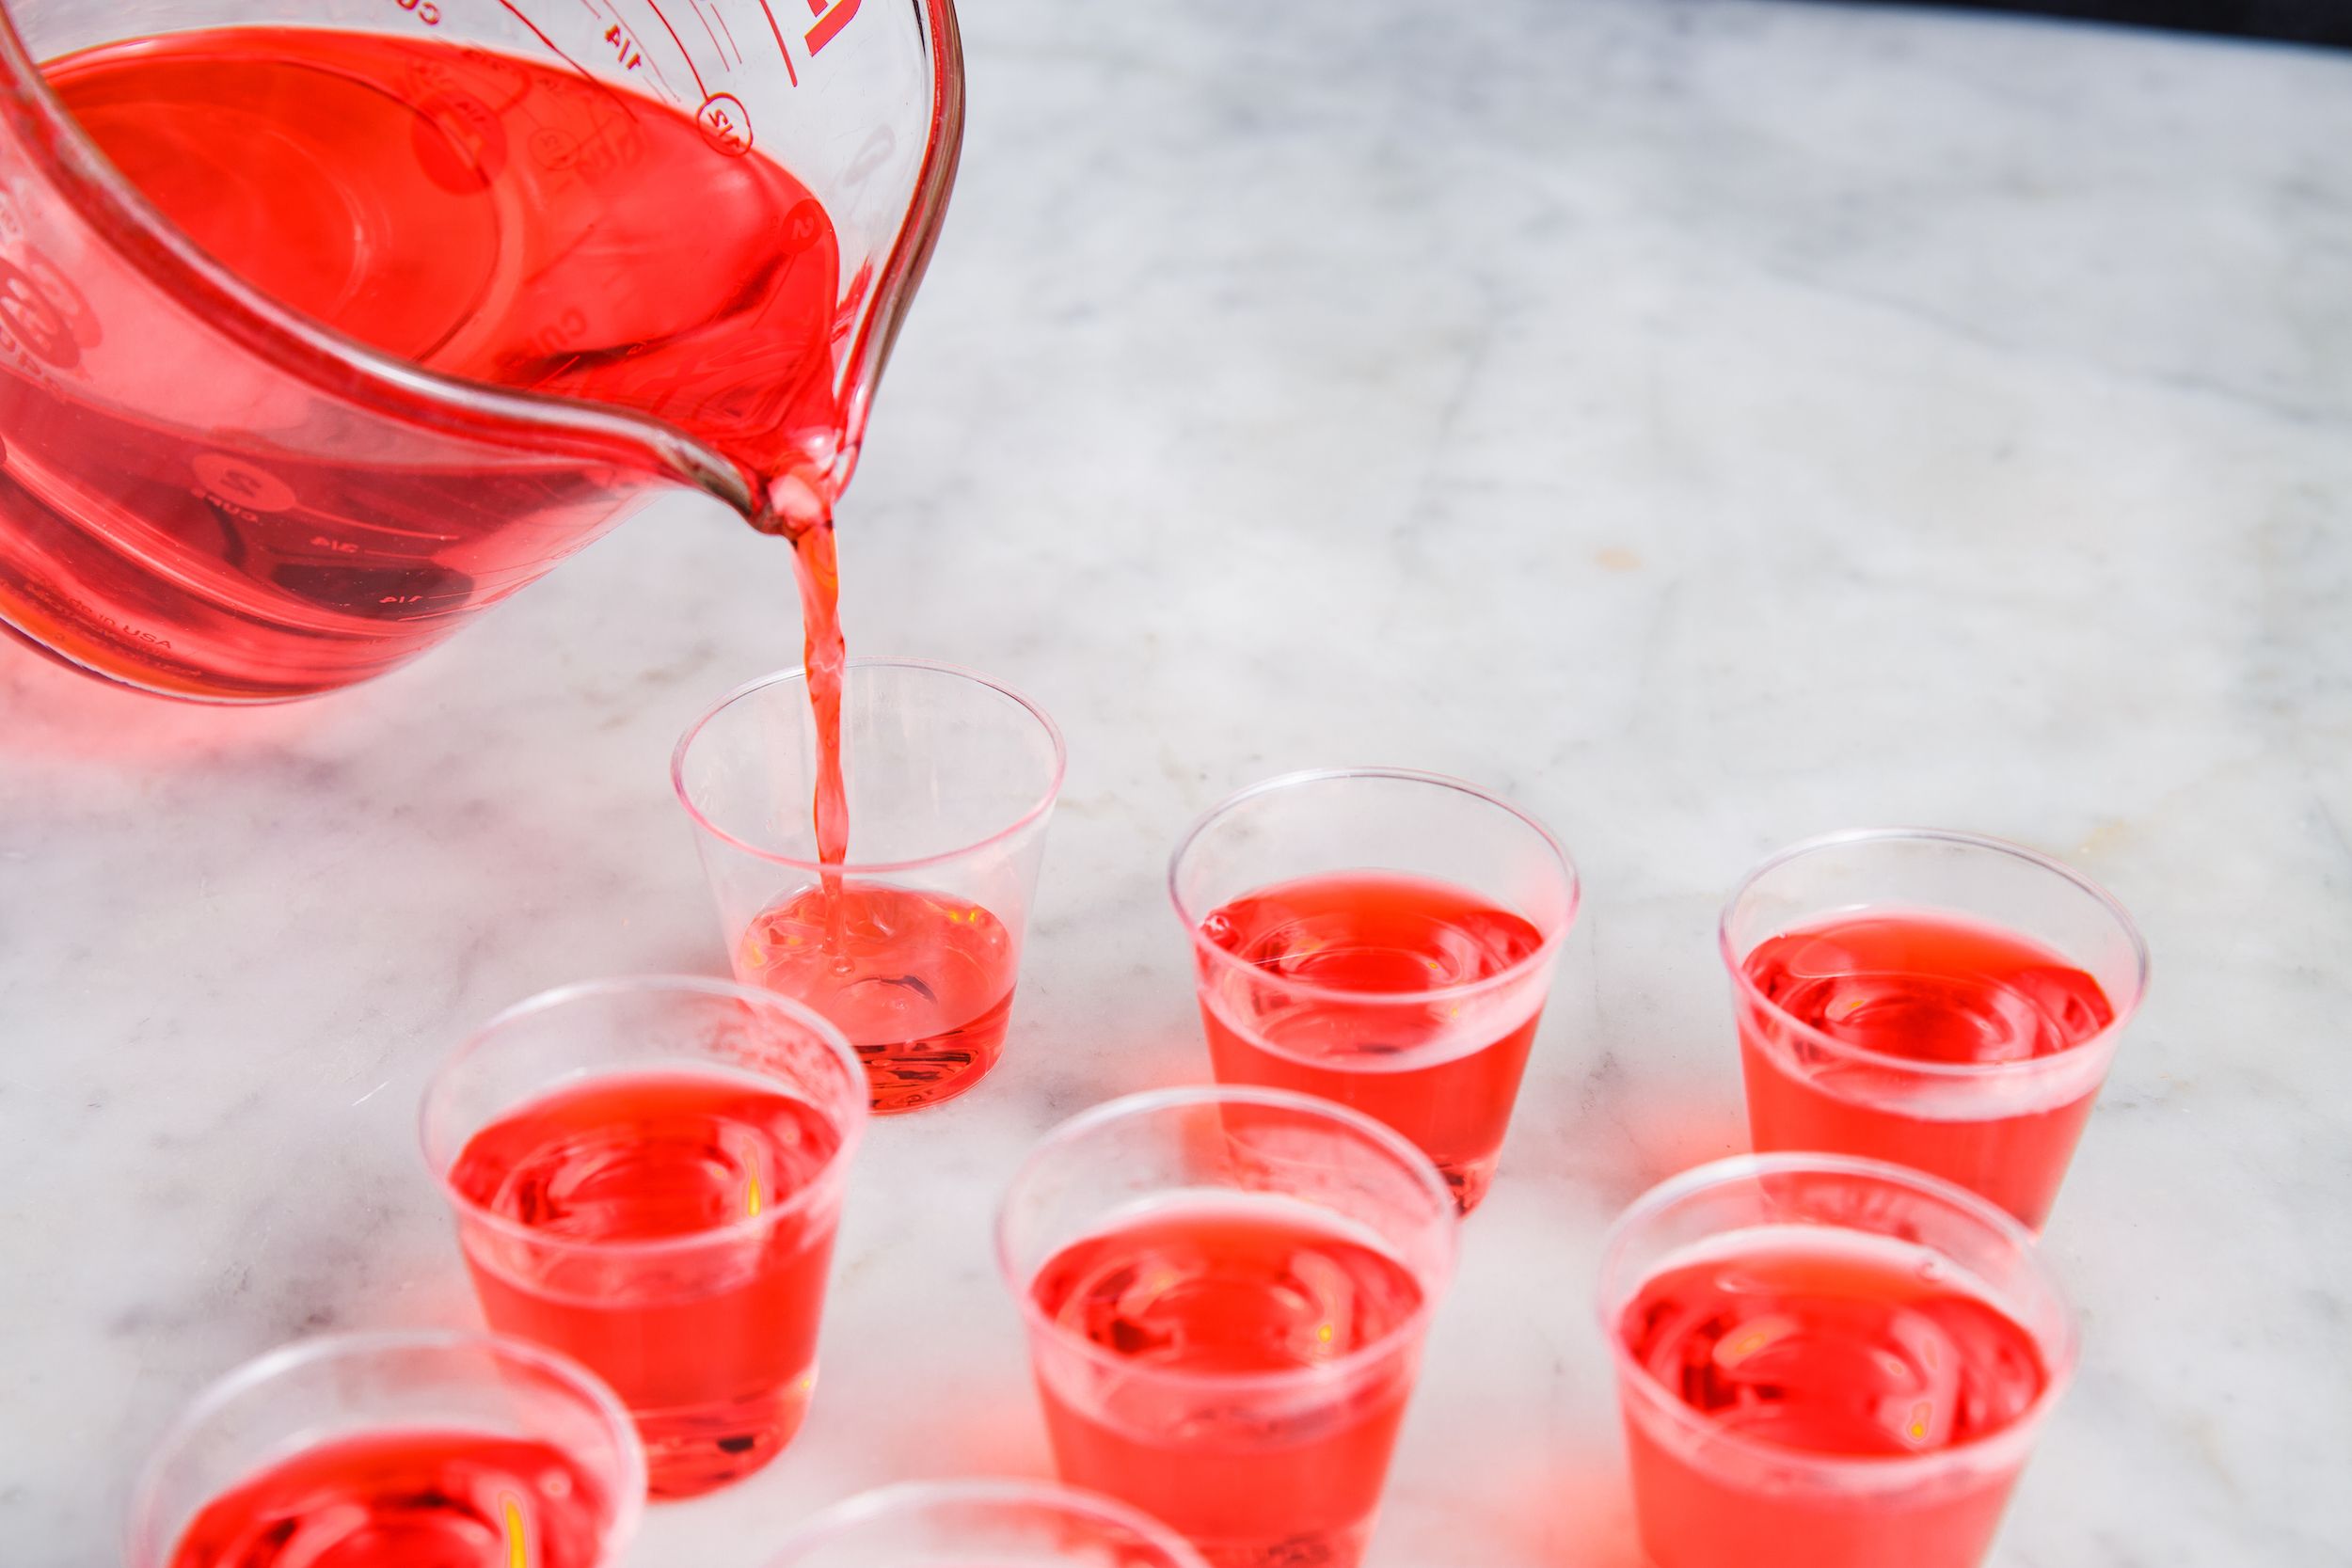 How to Make Jello Shots - Best Vodka Jello Shots Recipe